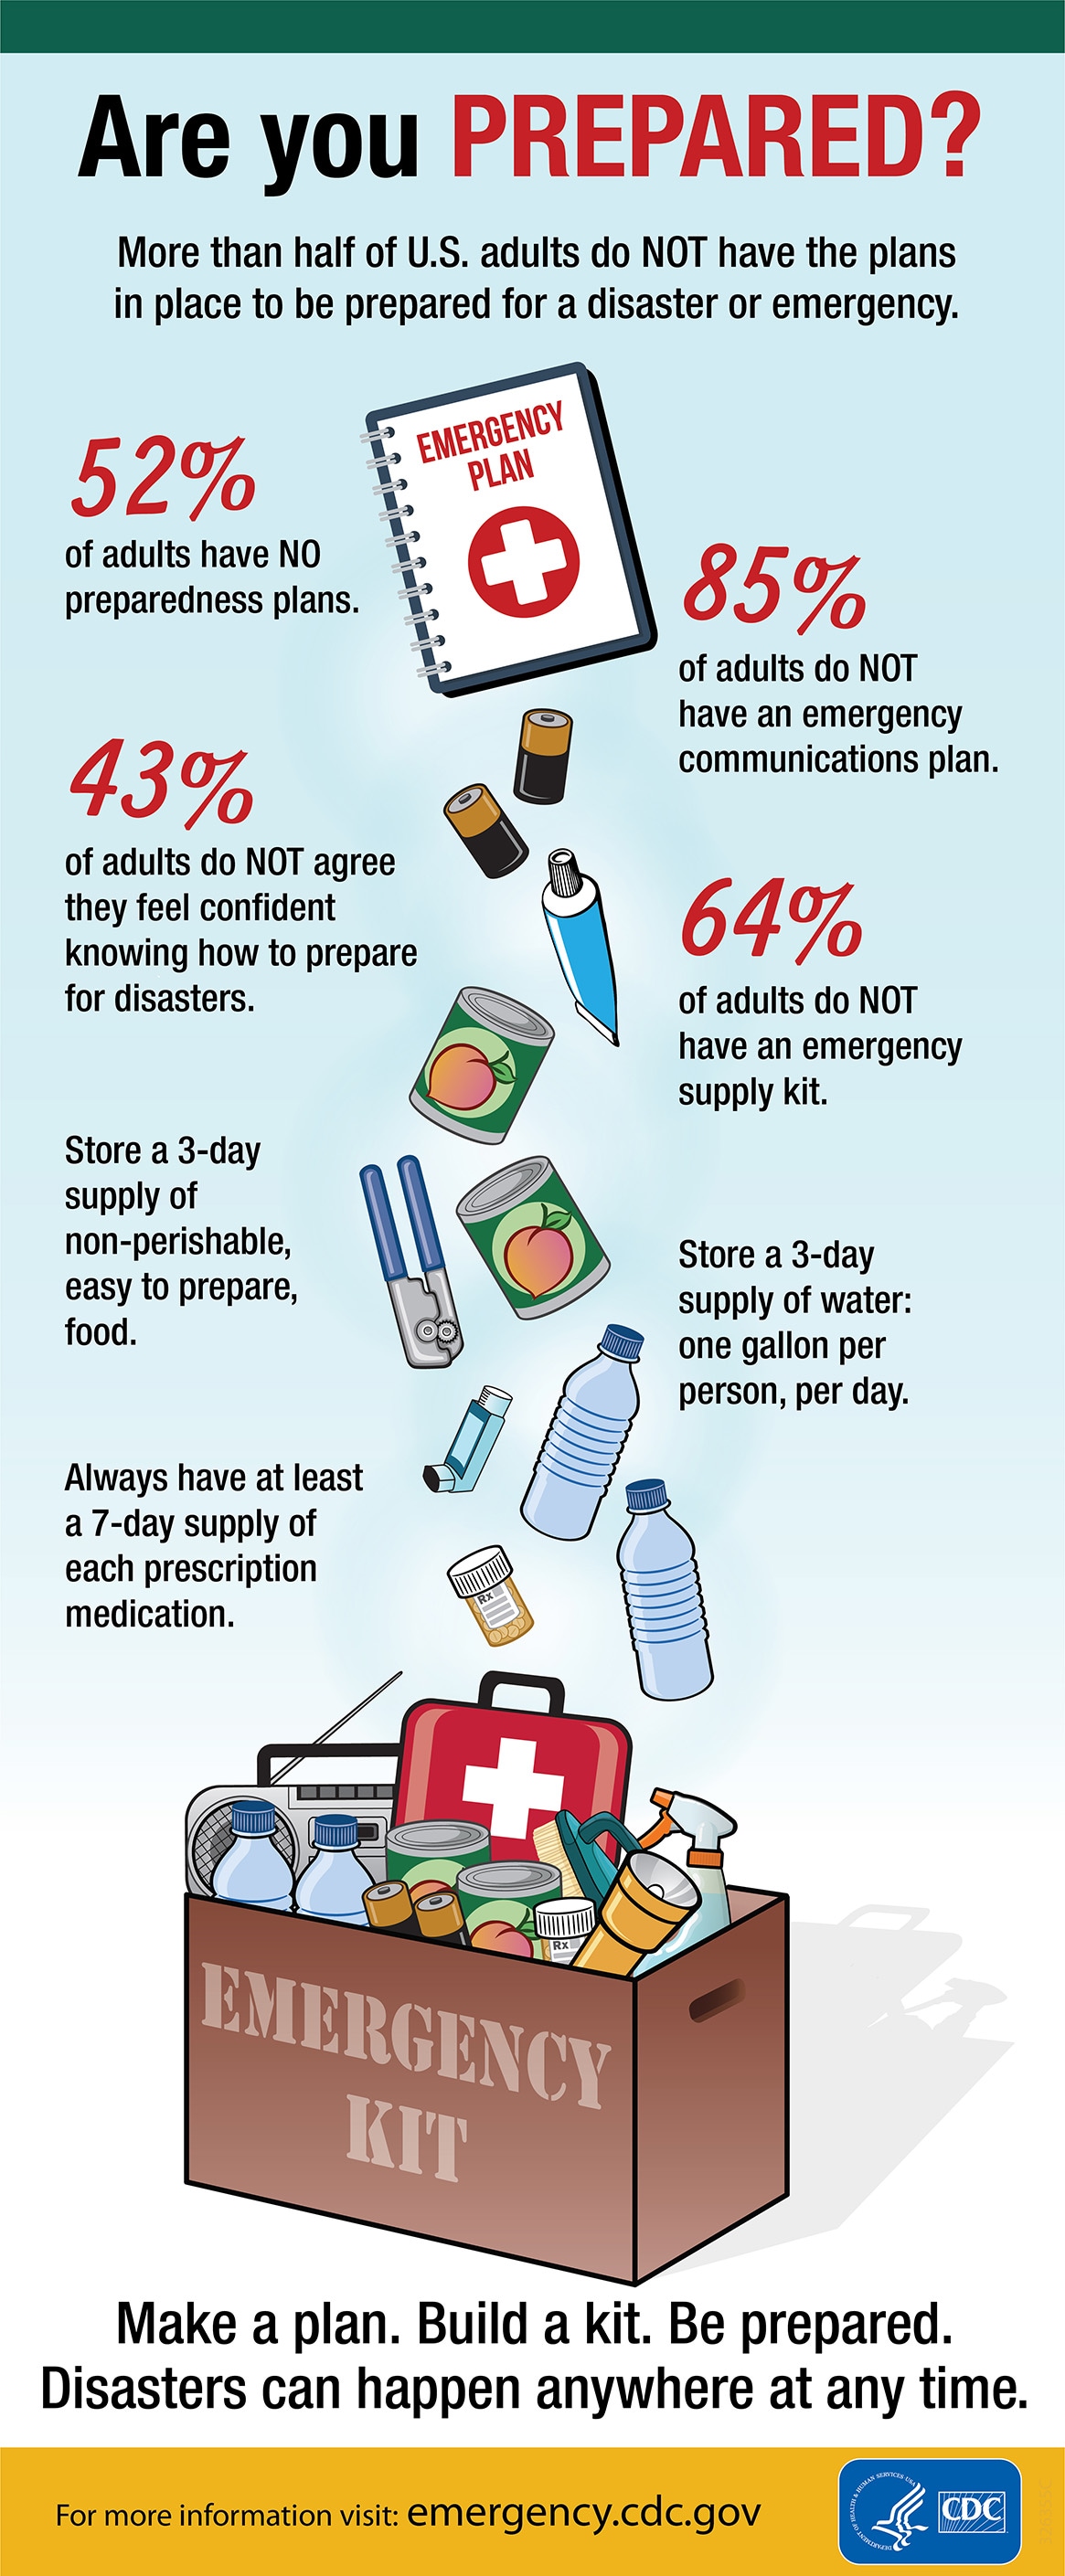 https://www.cdc.gov/nceh/hsb/disaster/images/preparedness-infographic.jpg?_=49690